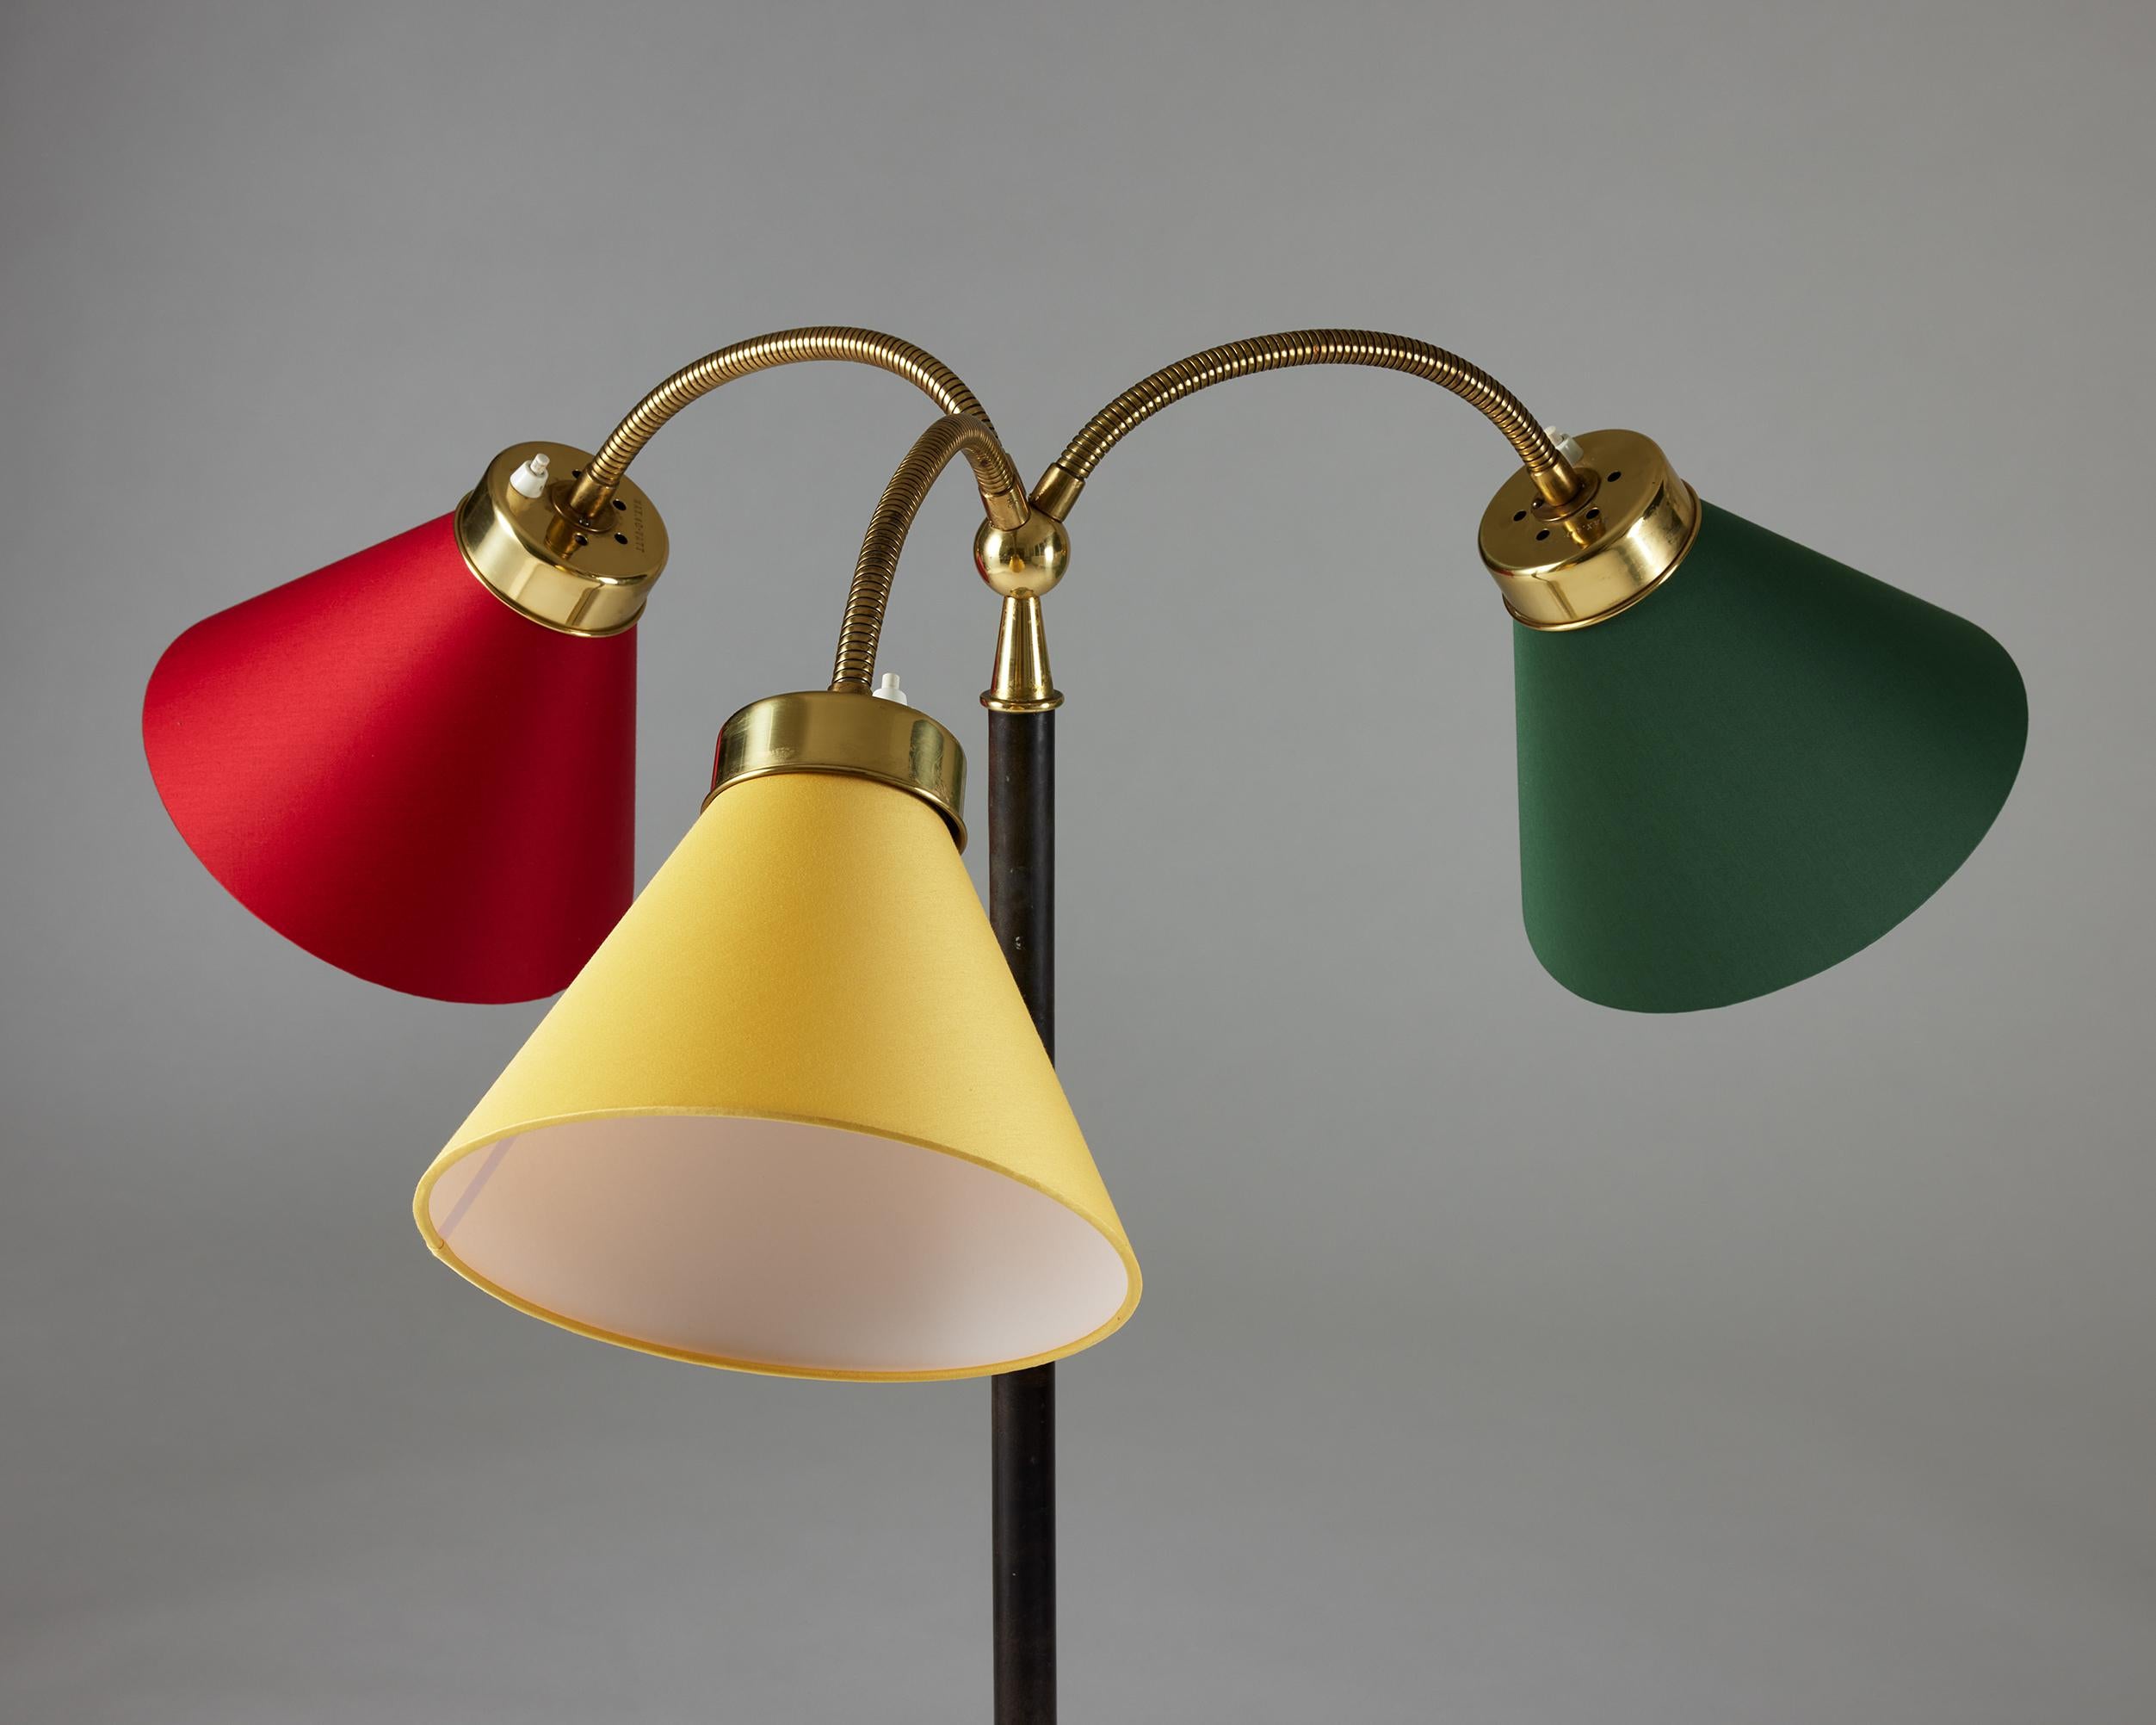 Swedish Floor Lamp ‘San Francisco’ Model G2431 Designed by Josef Frank for Svenskt Tenn